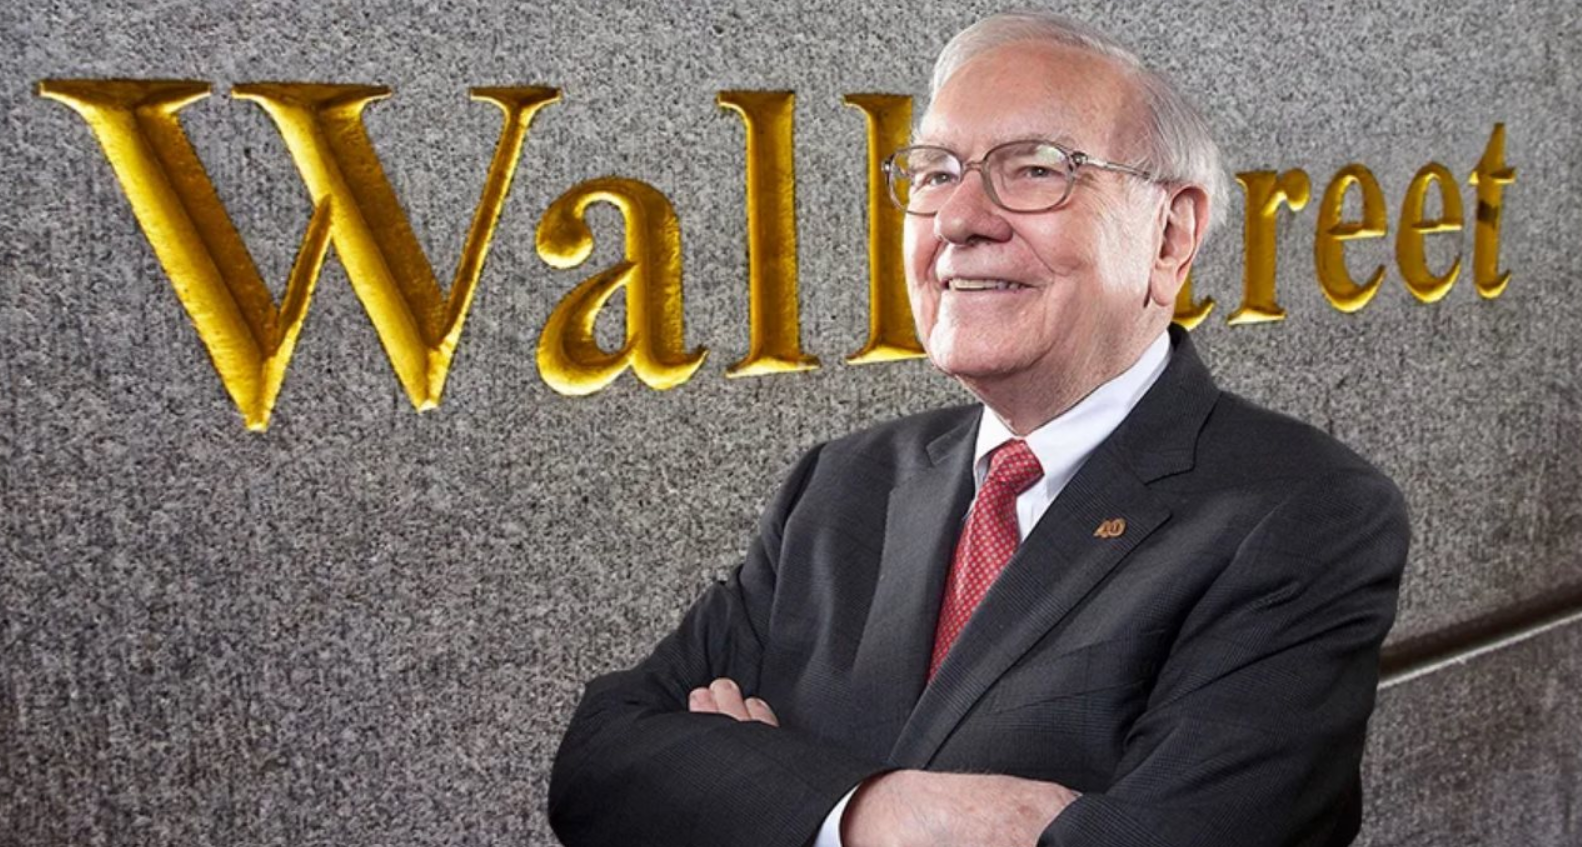 Tỷ phú Warren Buffett đưa ra 9 lời khuyên giúp đổi đời: Sống tiết kiệm và biết cân bằng lọt vào danh sách - Ảnh 2.